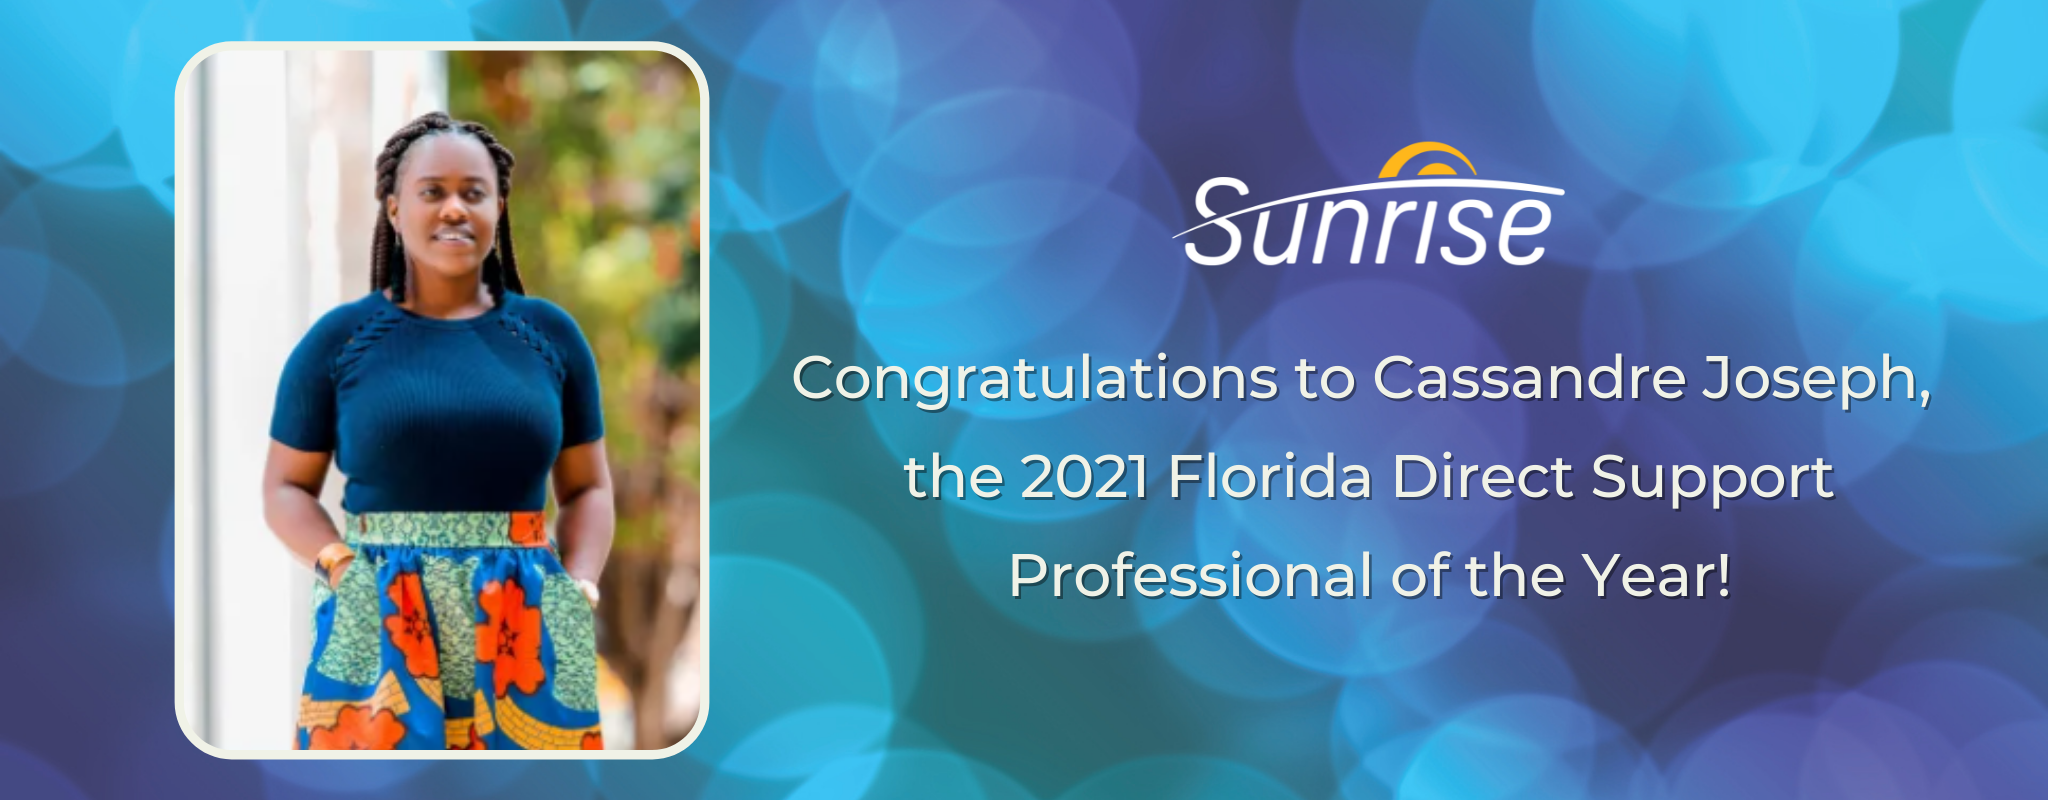 Félicitations à Cassandre Joseph, le professionnel du support direct de l'année 2021 en Floride !